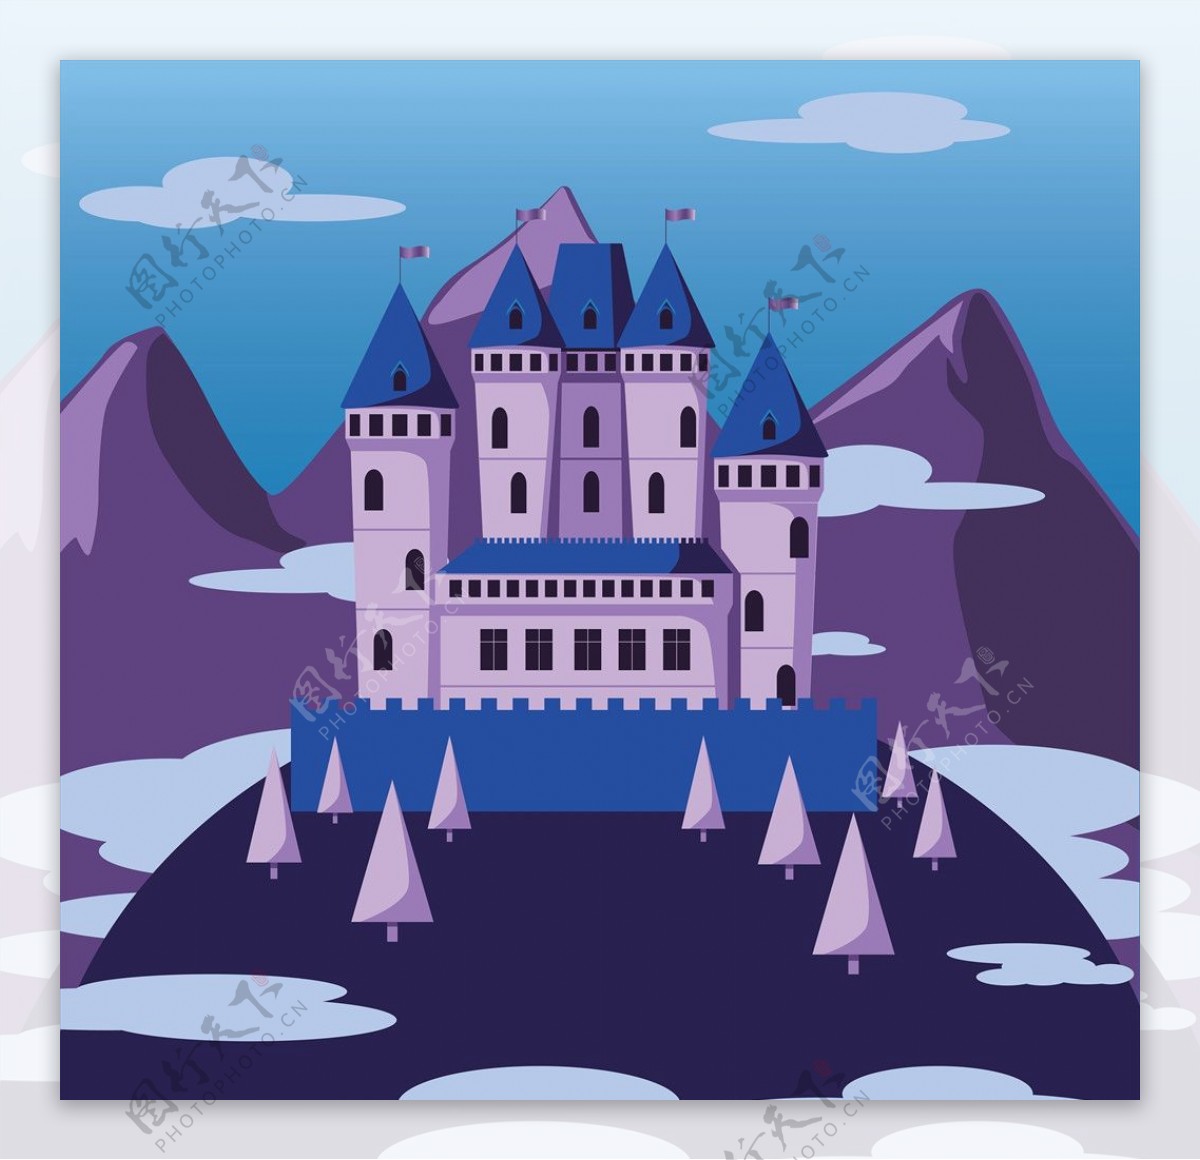 城堡插画